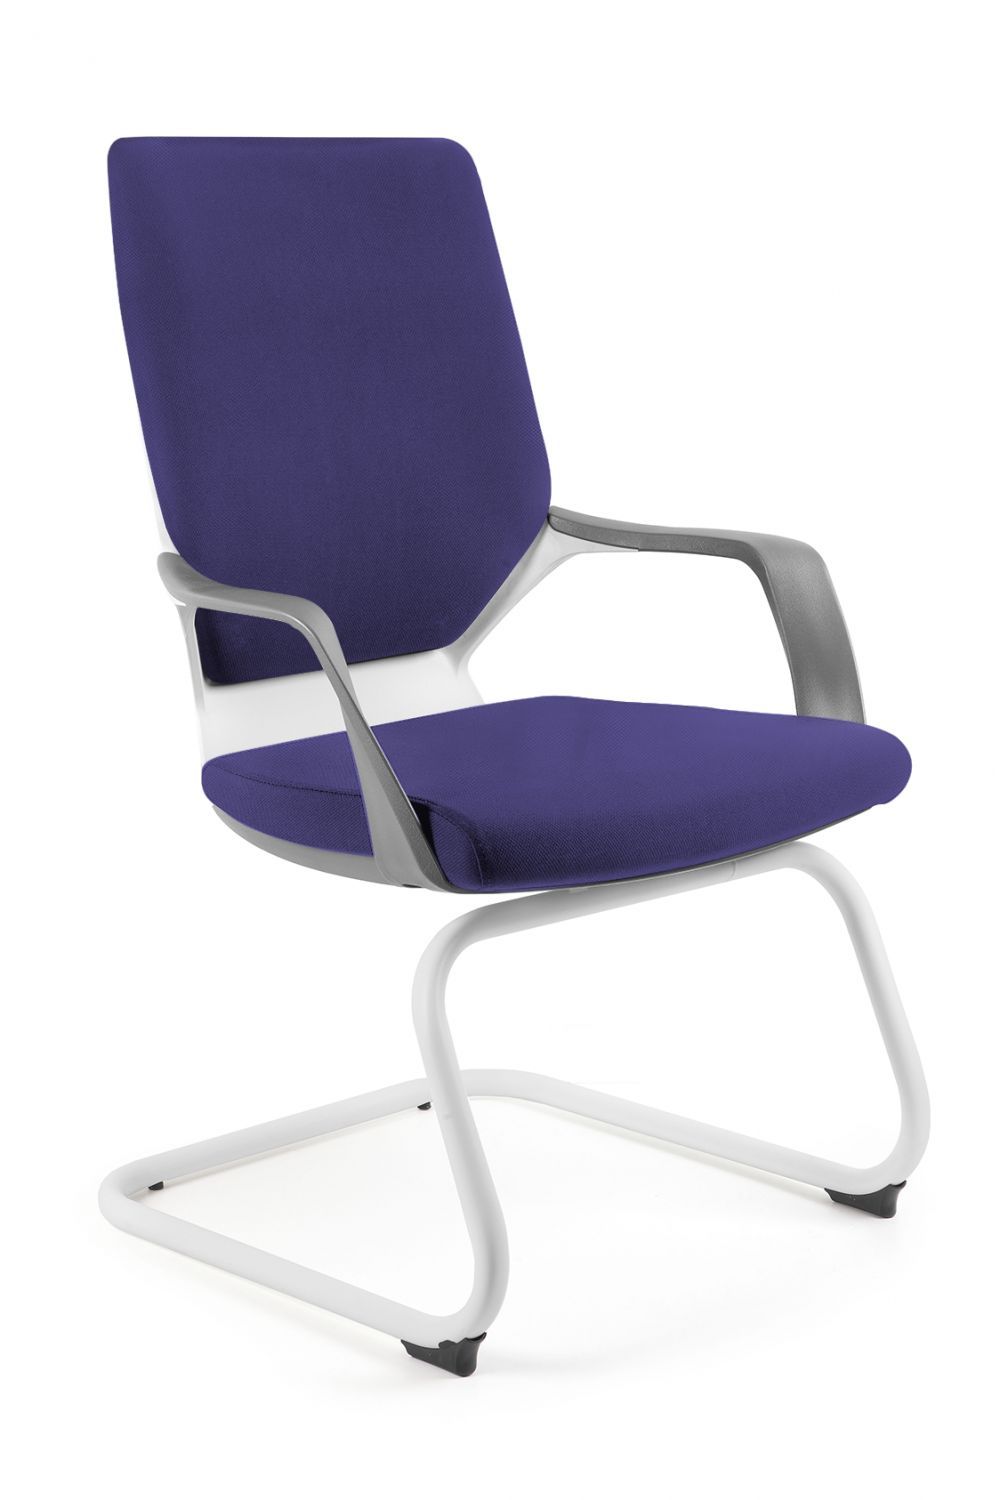 Fotel biurowy, krzesło, Apollo Skid, biały, navyblue